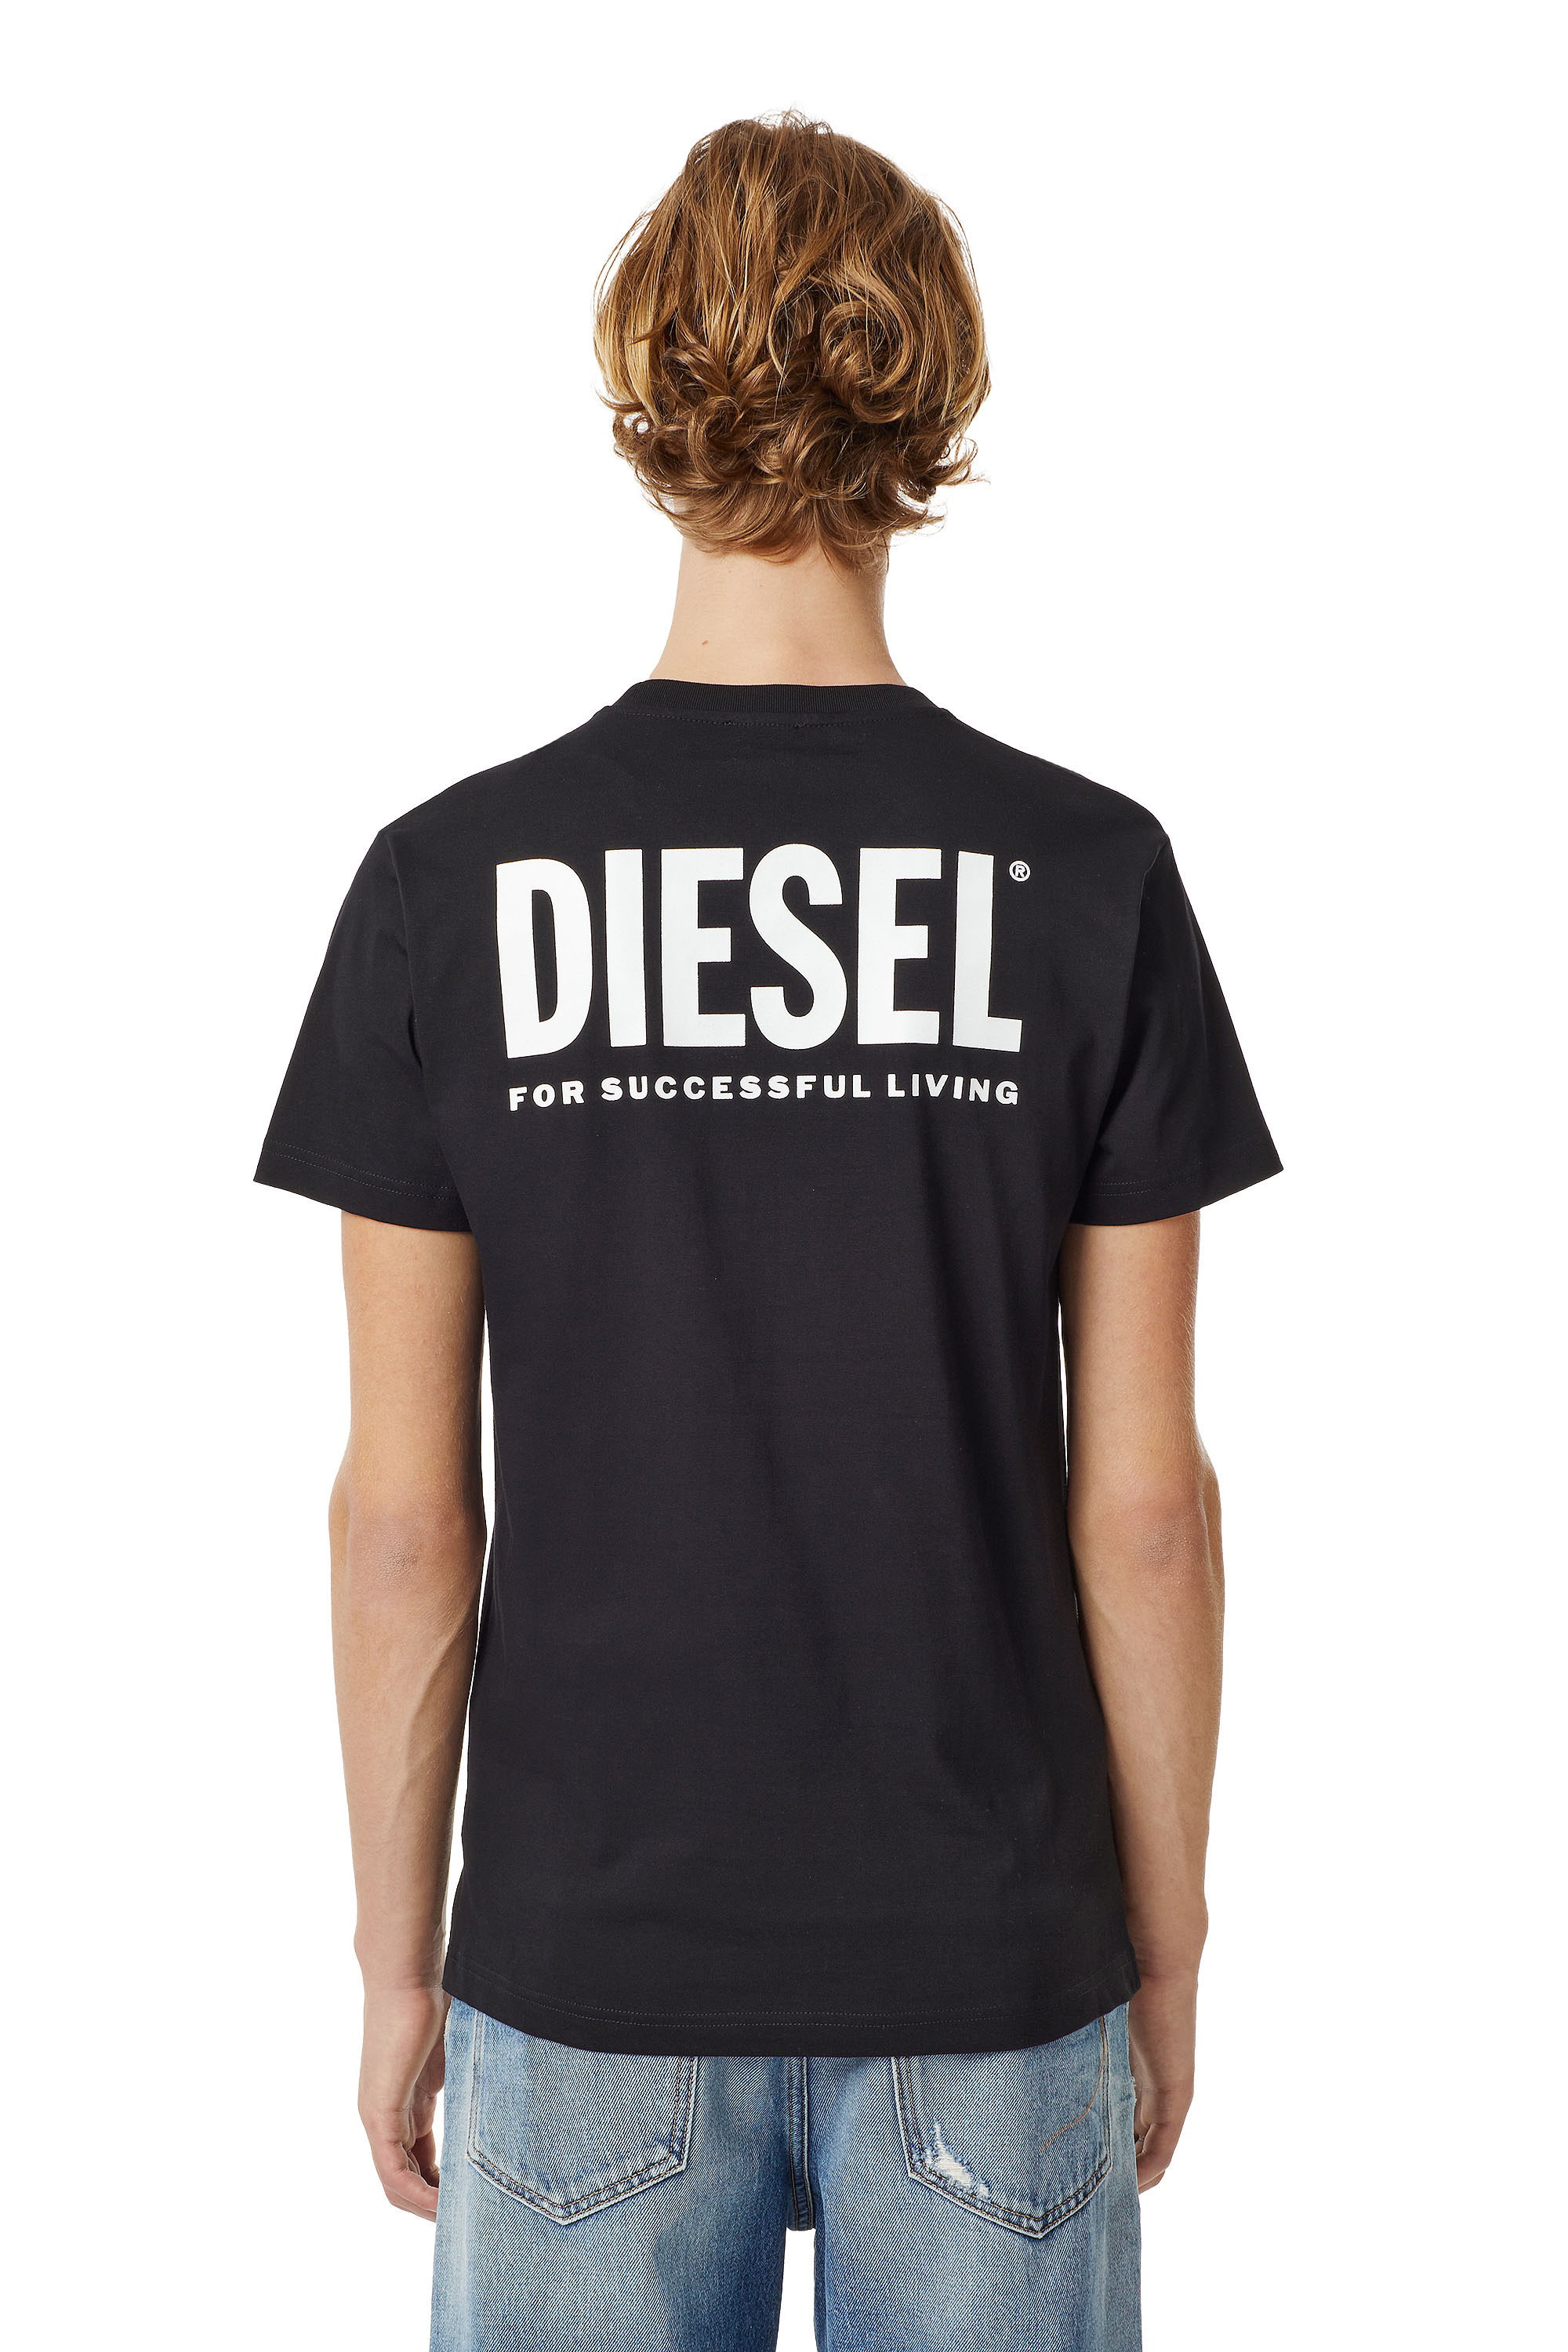 Diesel - LR-T-DIEGO-VIC, Black - Image 2